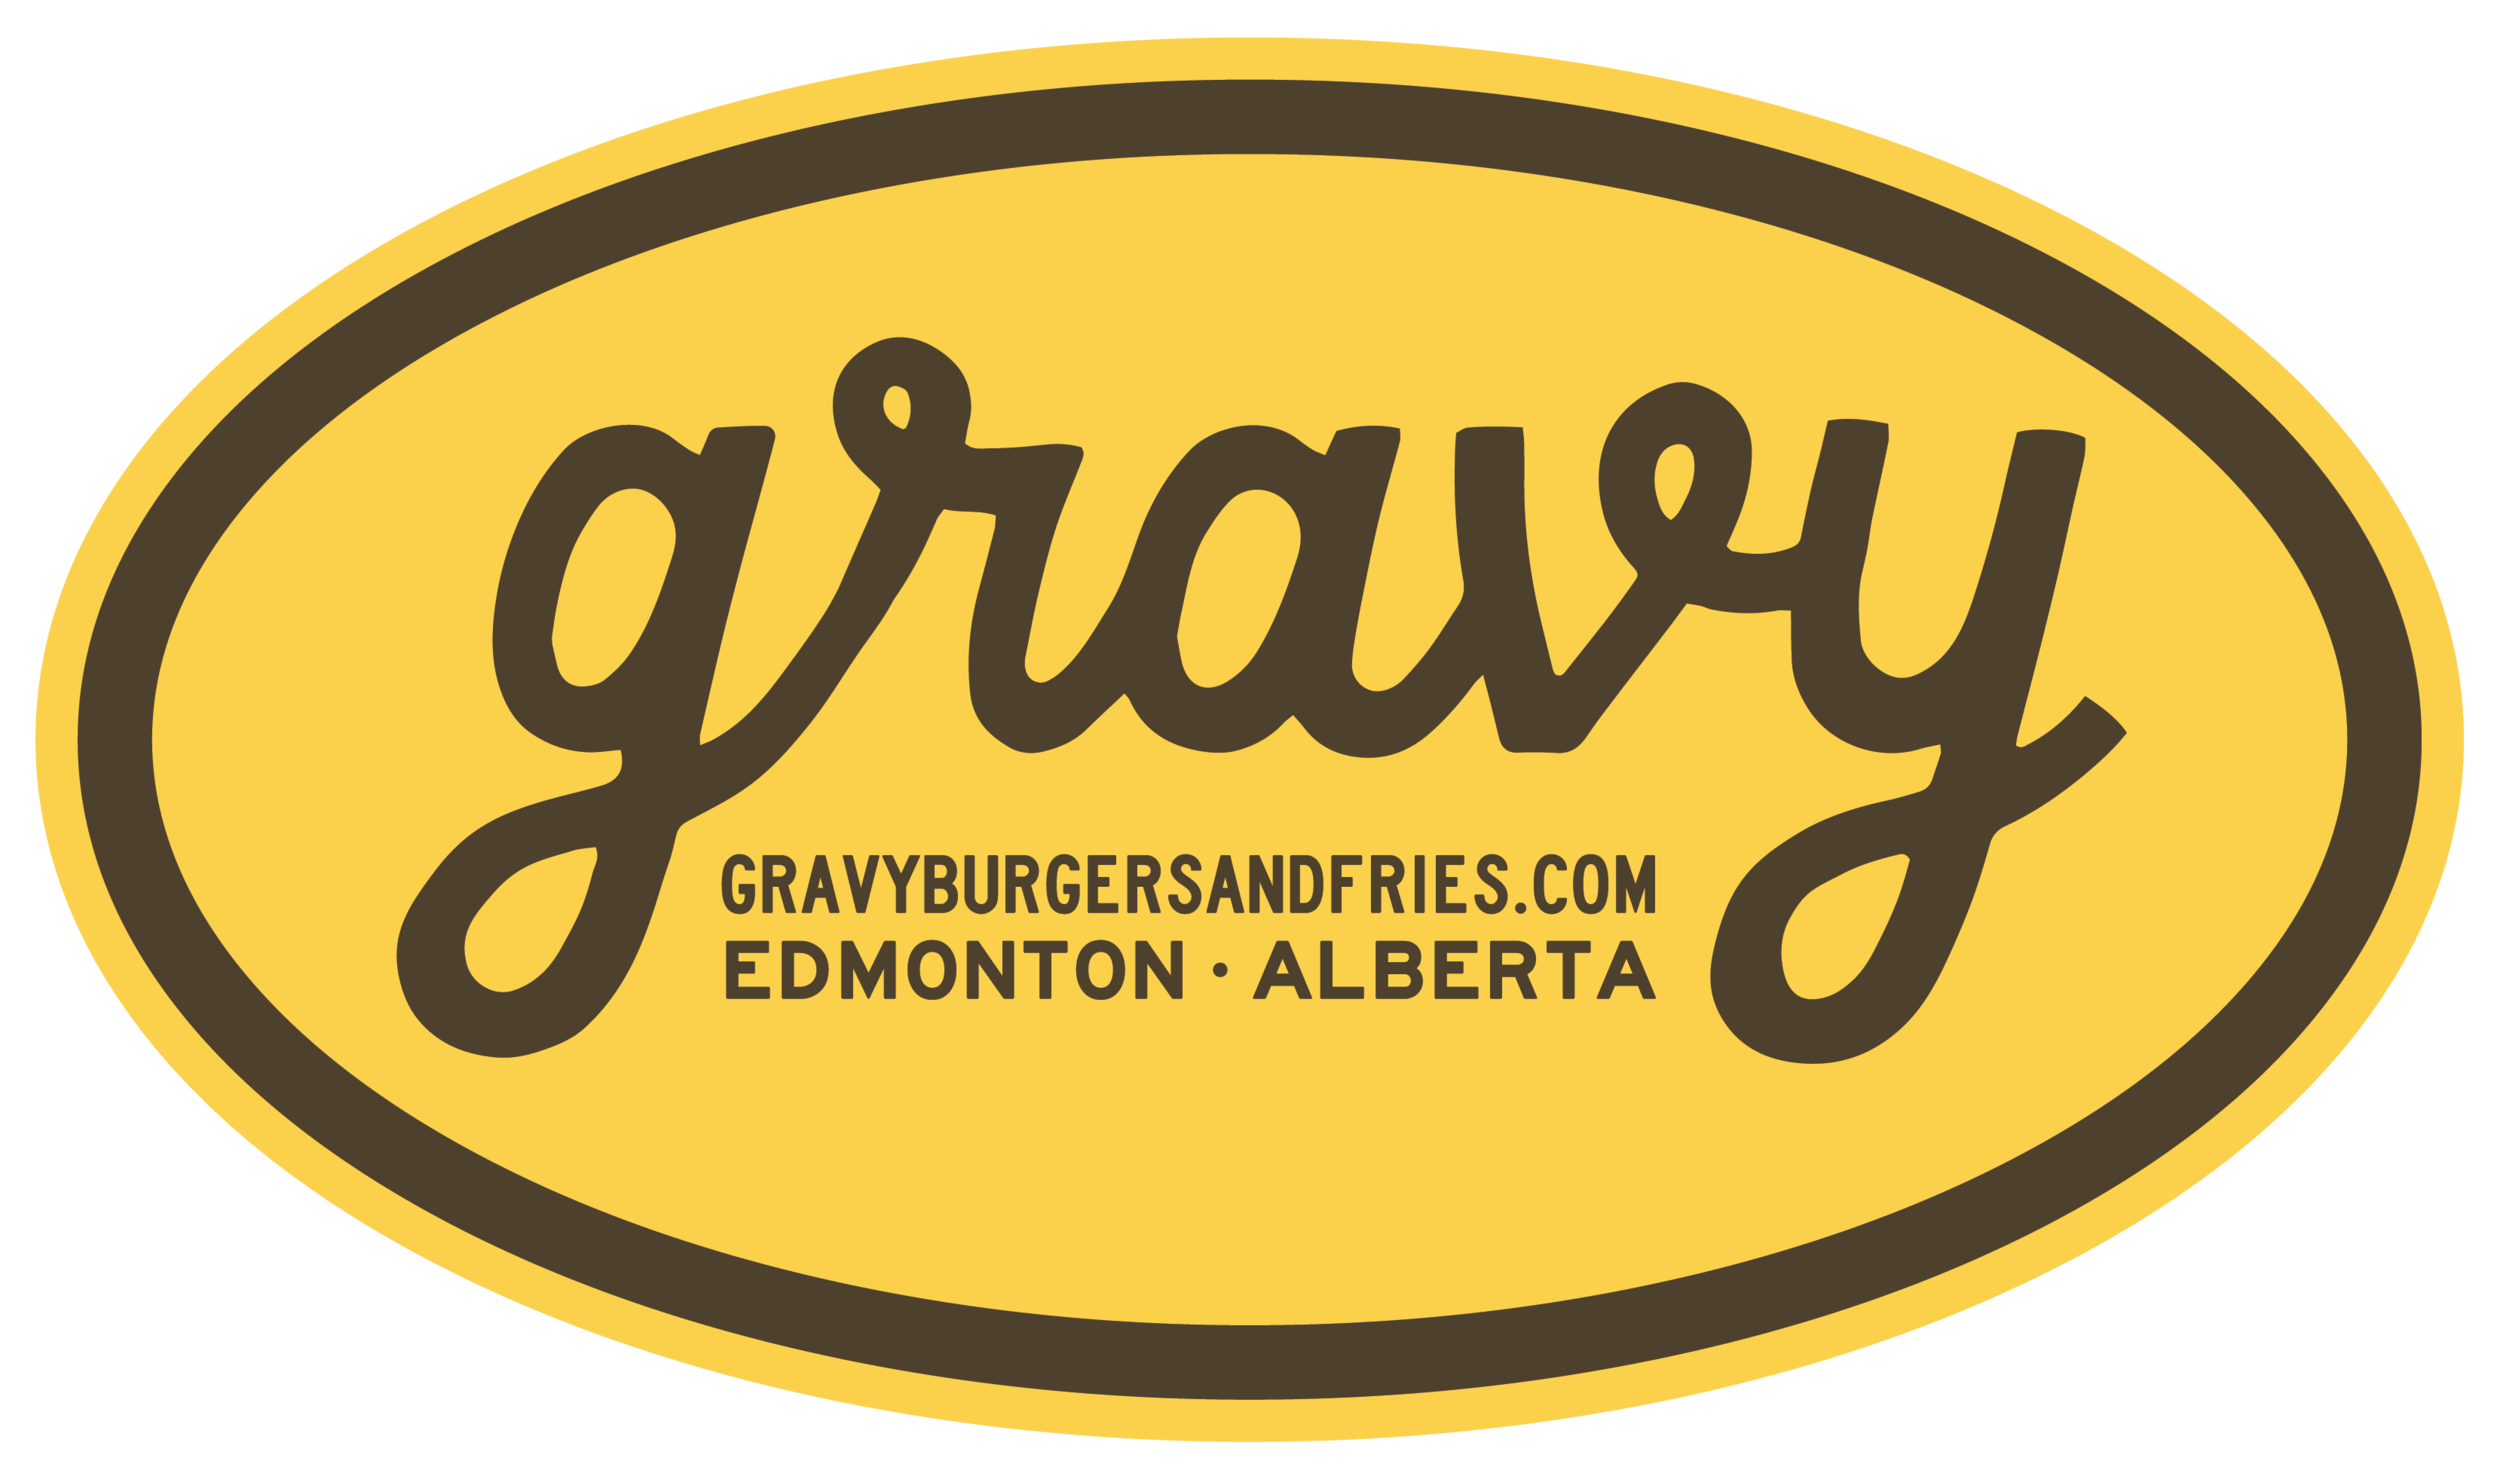 Gravy